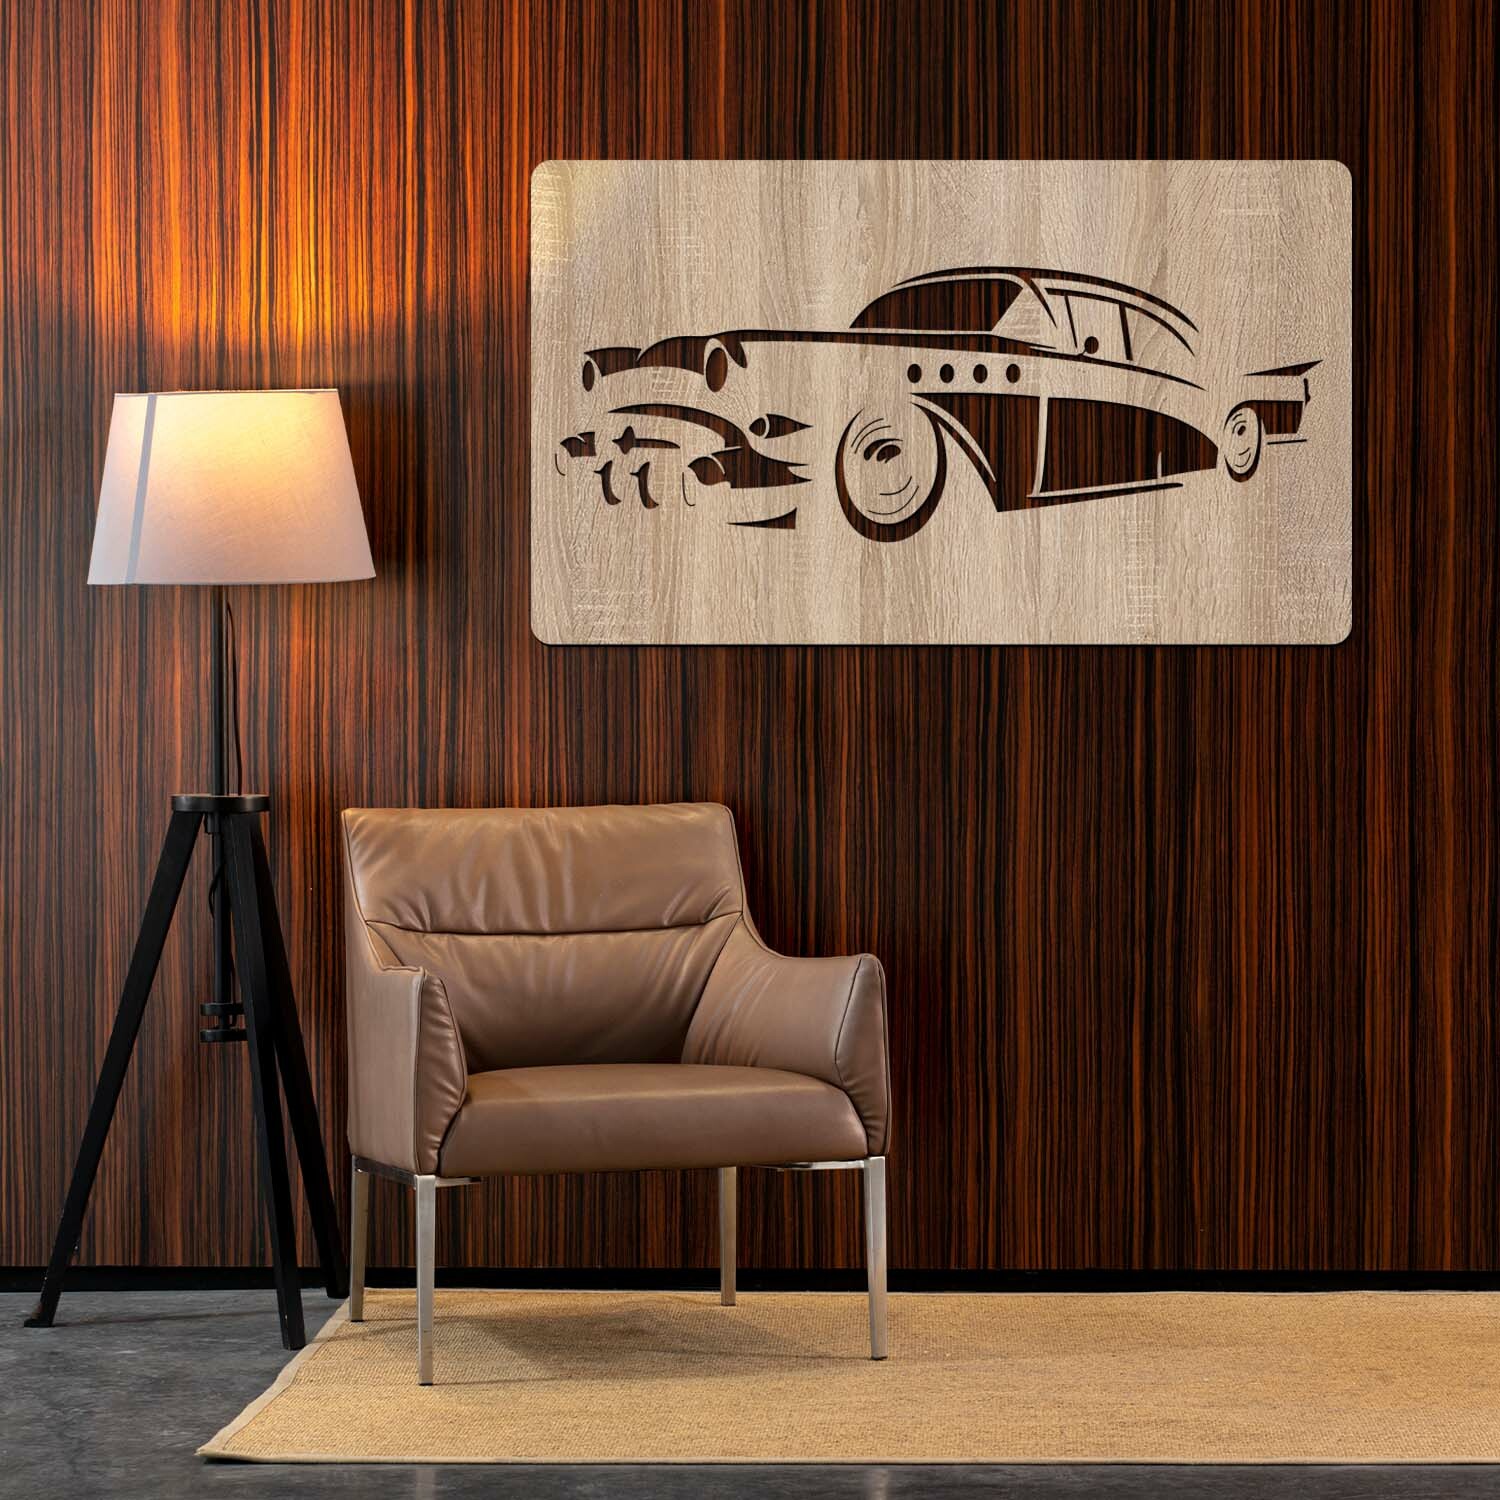 Dřevěný obraz - Auto Buick Century 1955